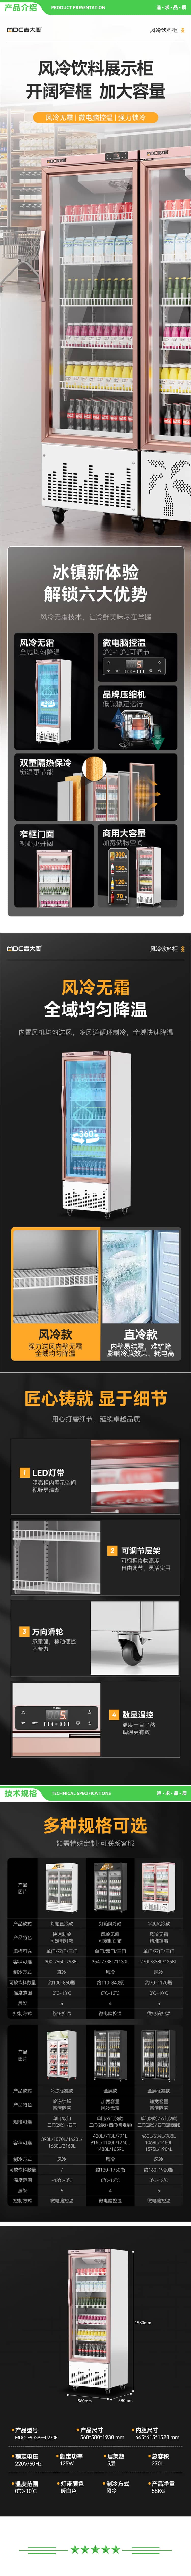 麦大厨 MDC-F9-GB-0270F 饮料柜展示柜冷藏柜立式商用冰柜啤酒水饮料陈列柜便利店超市展示柜水果保鲜柜 2.jpg